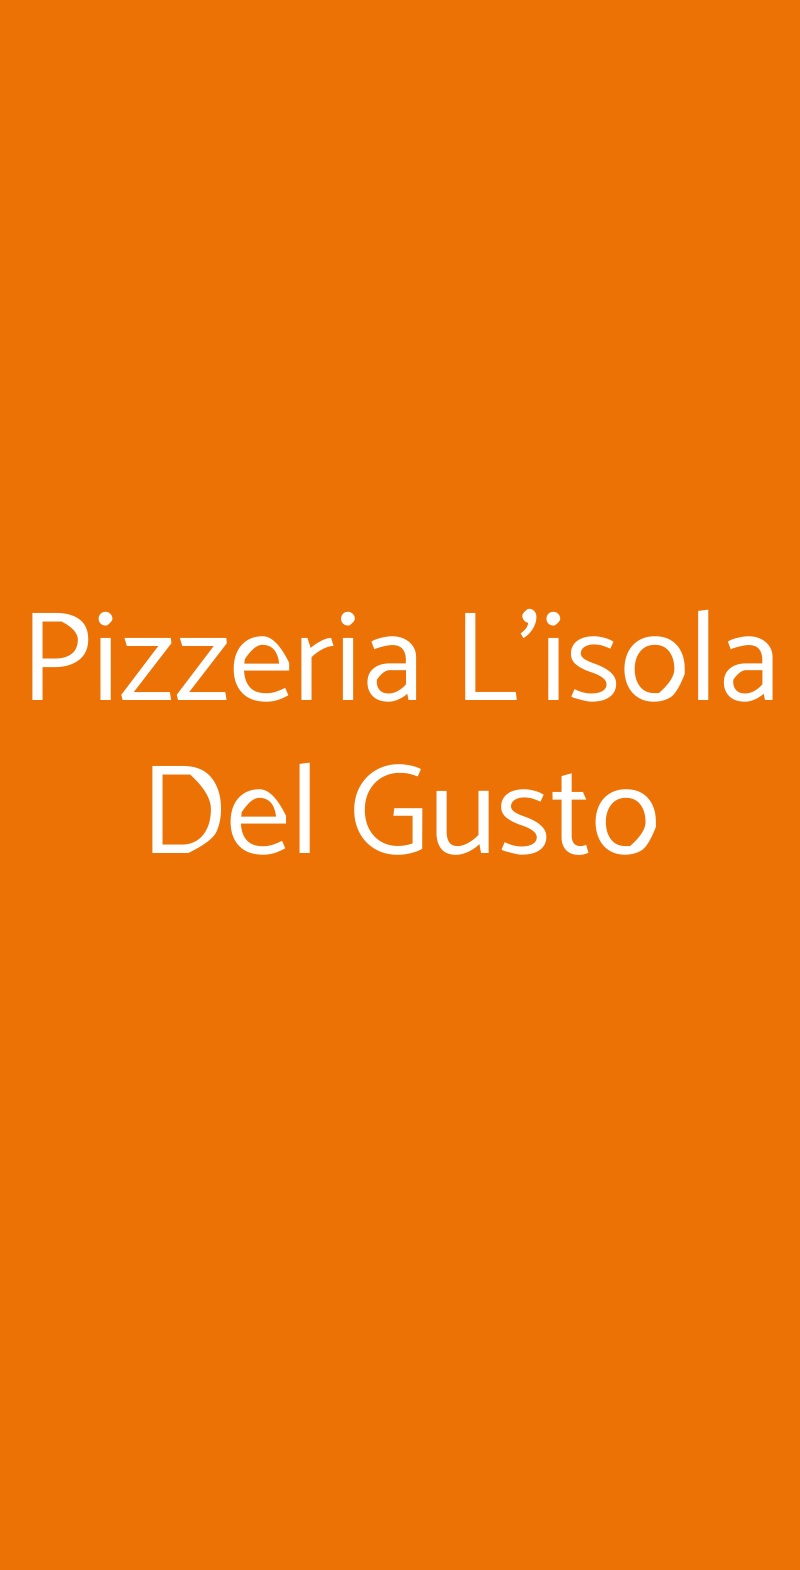 Pizzeria L'isola Del Gusto Parma menù 1 pagina